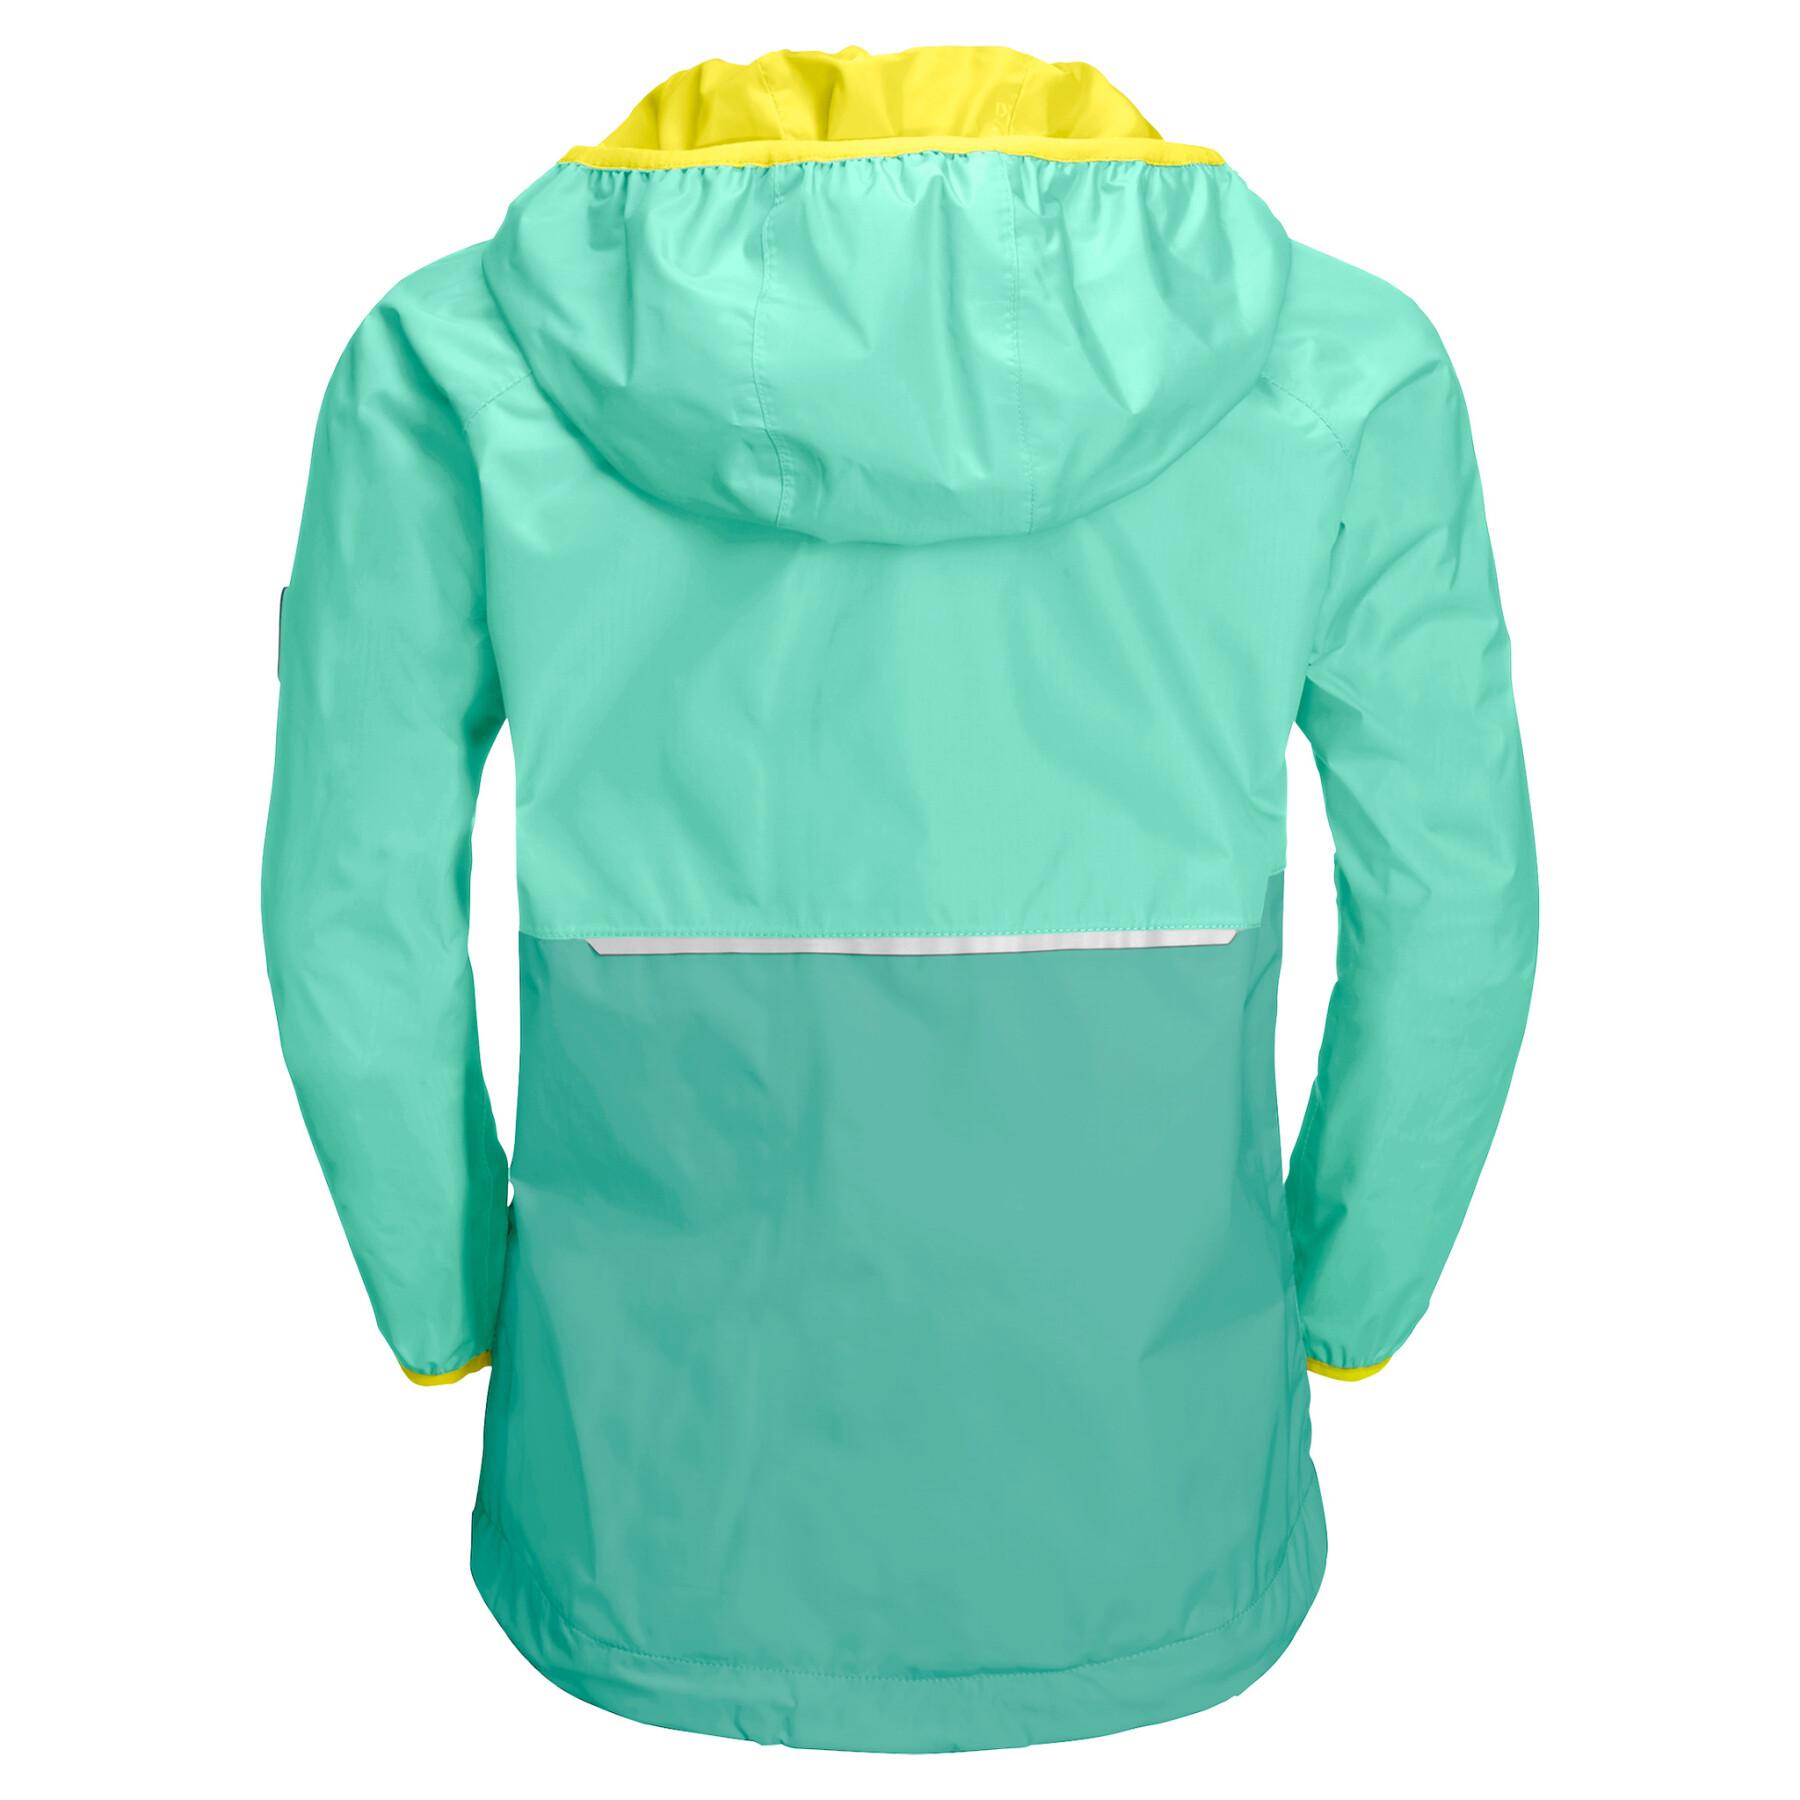 Waterproof jacket for children Jack Wolfskin Rainy Days